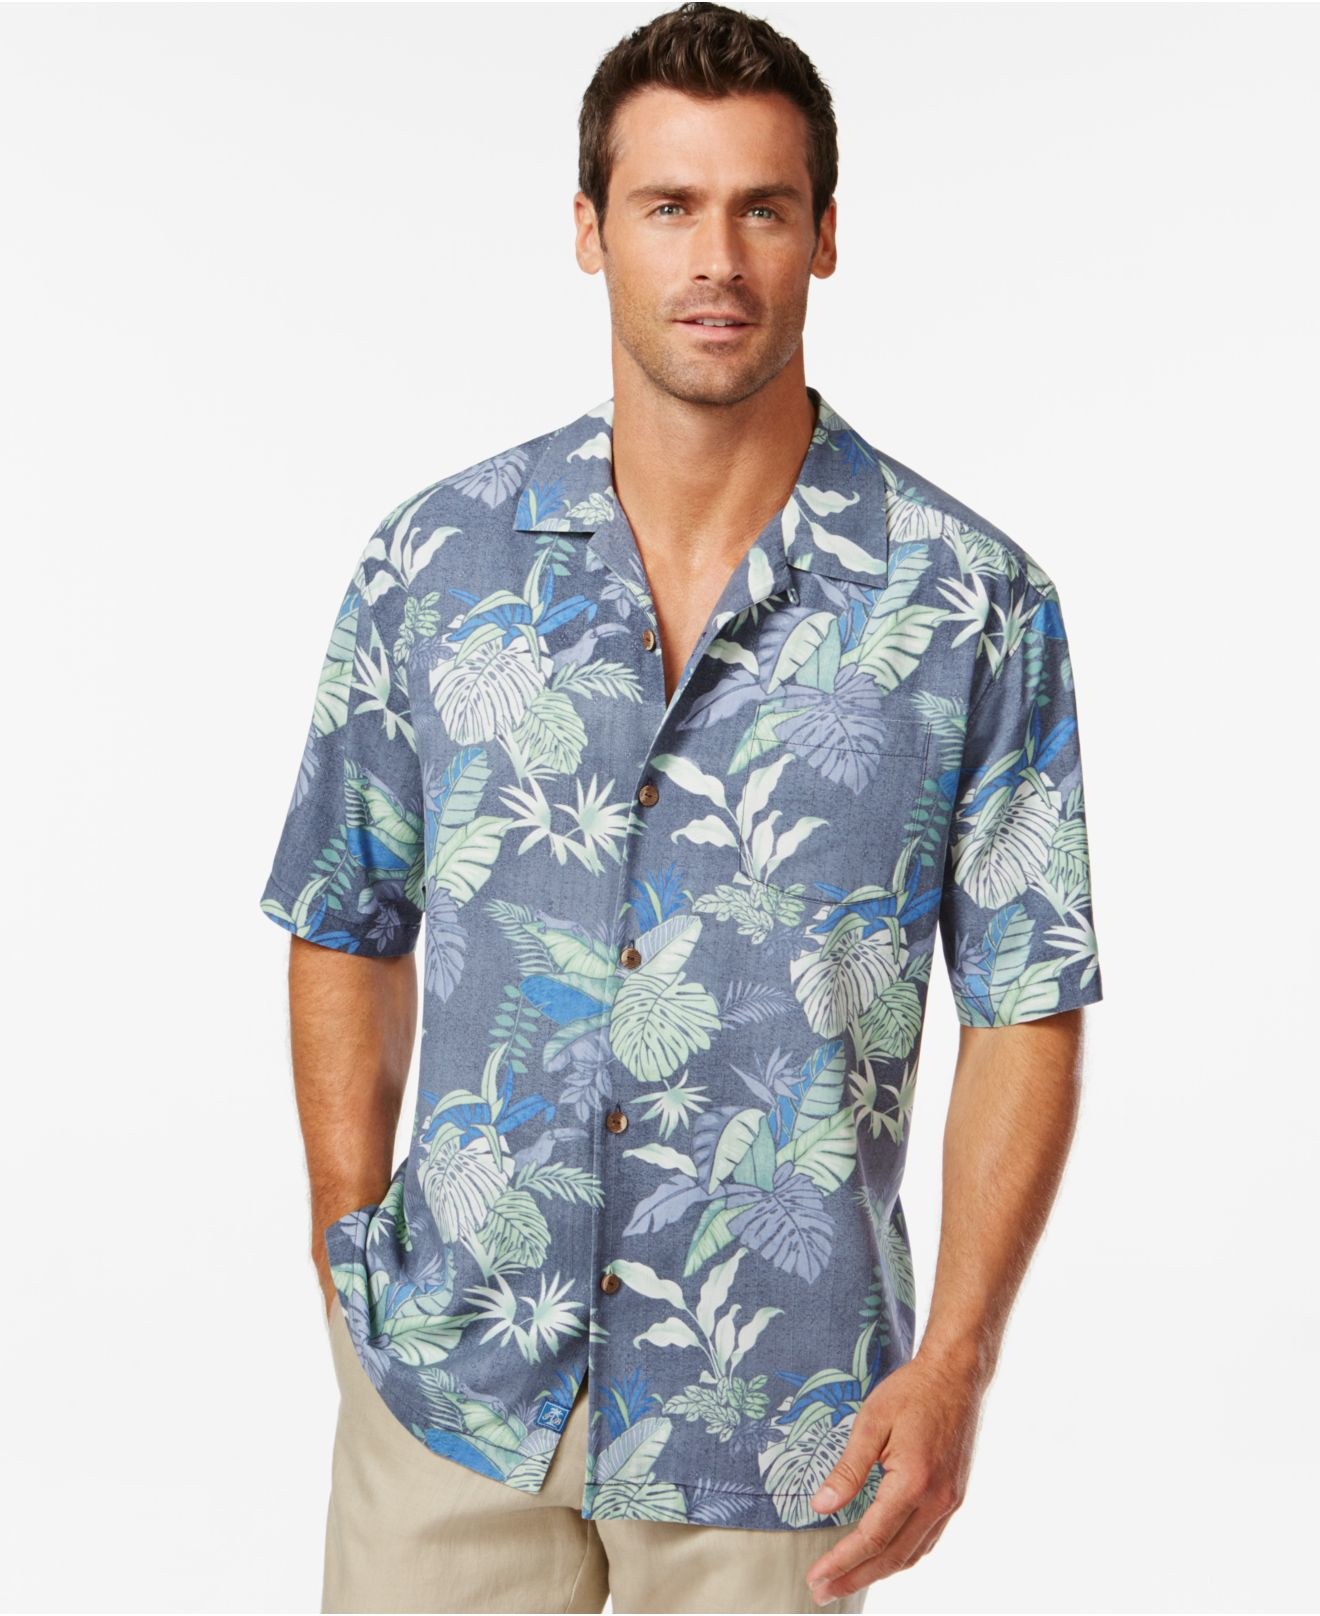 johnny bahama shirts